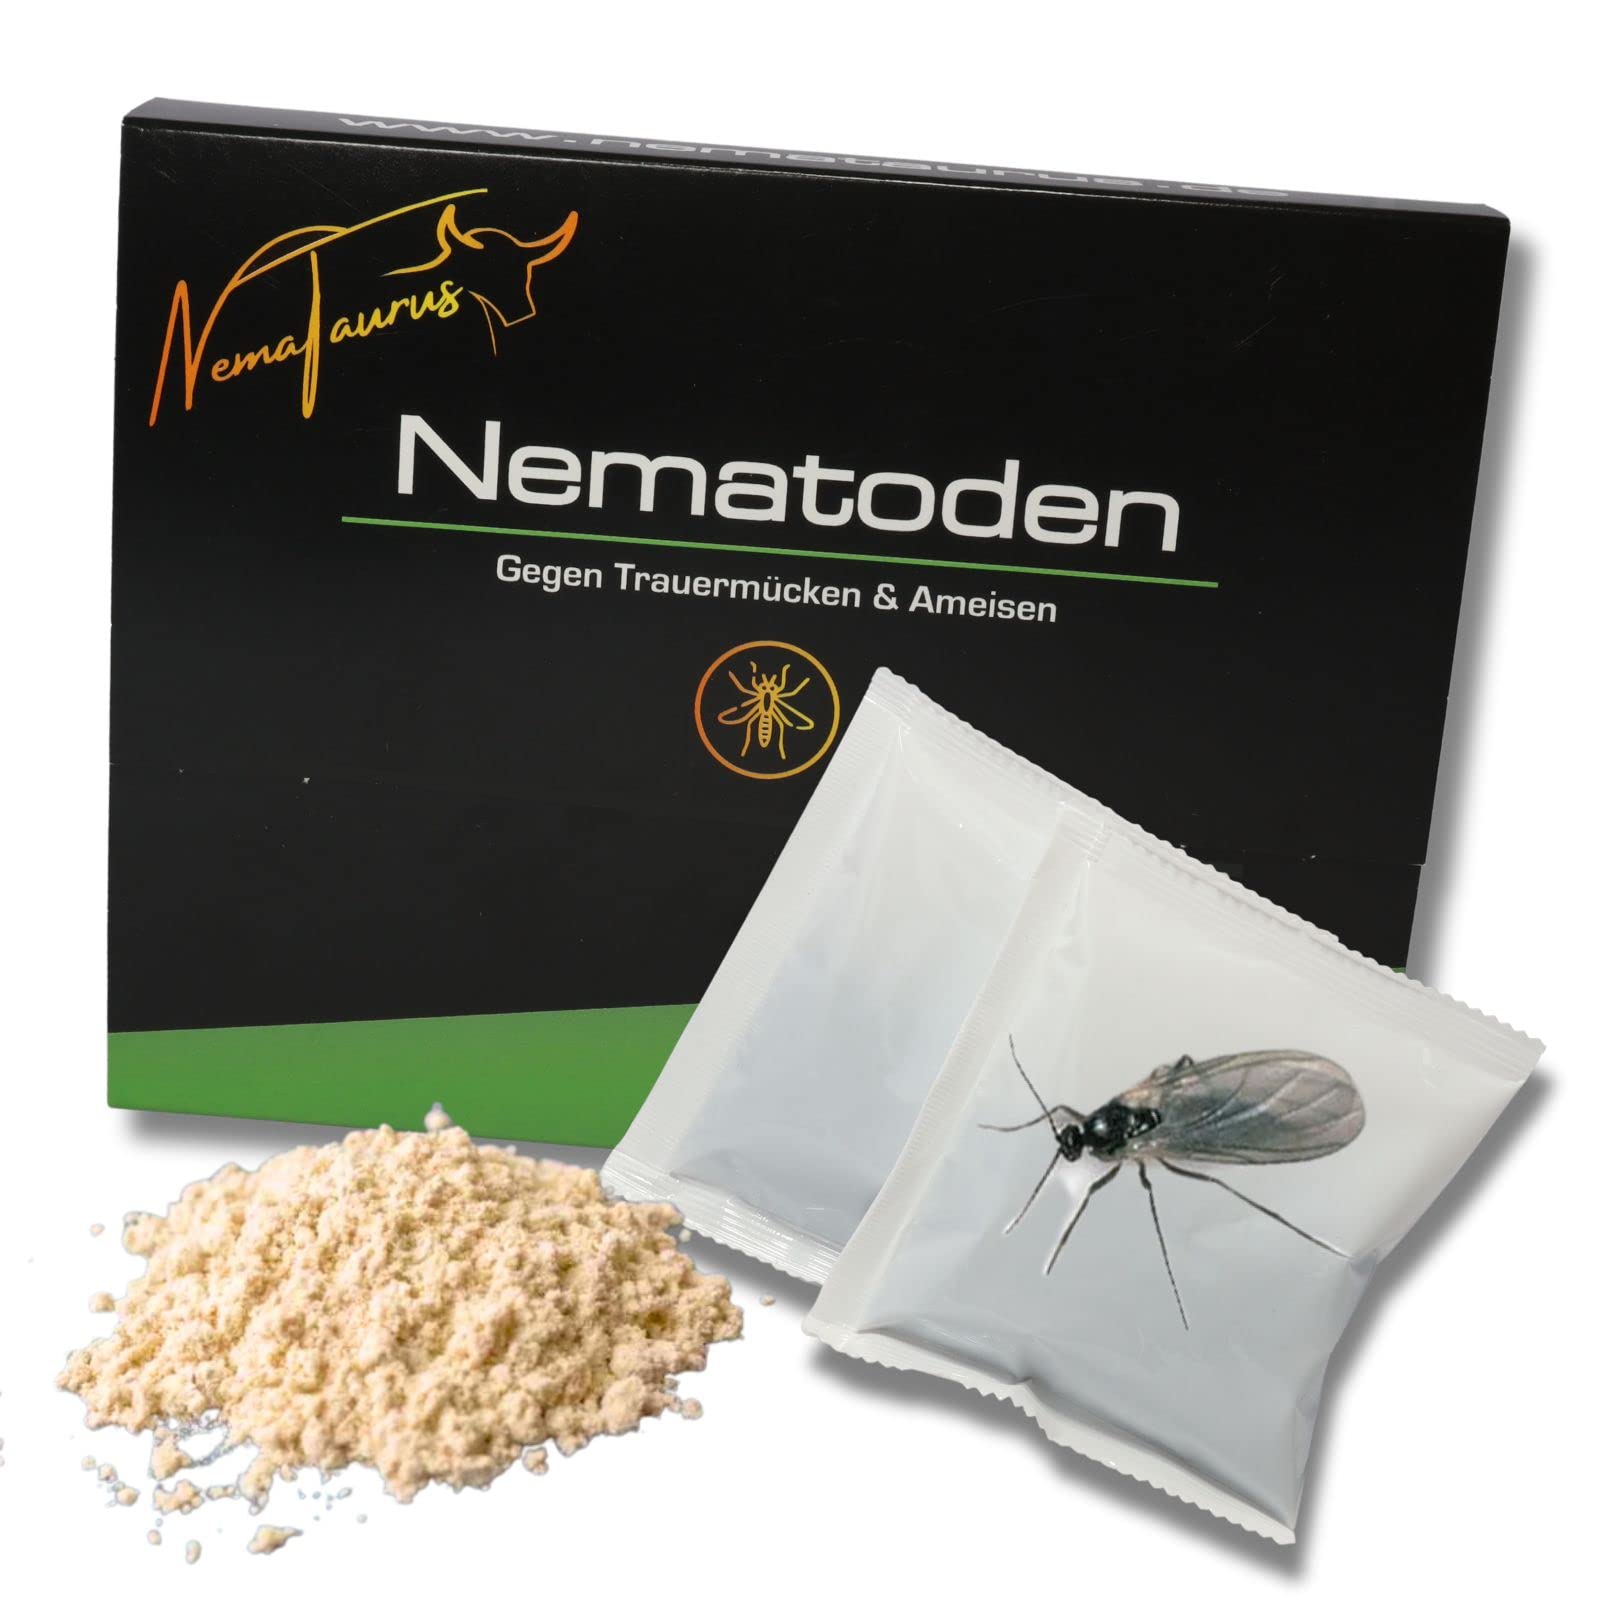 NemaTaurus® SF- Nematoden | zur Bekämpfung von Trauermücken | effektiver, biologischer Pflanzenschutz mit Fadenwürmern (50 Mio für 100m²)